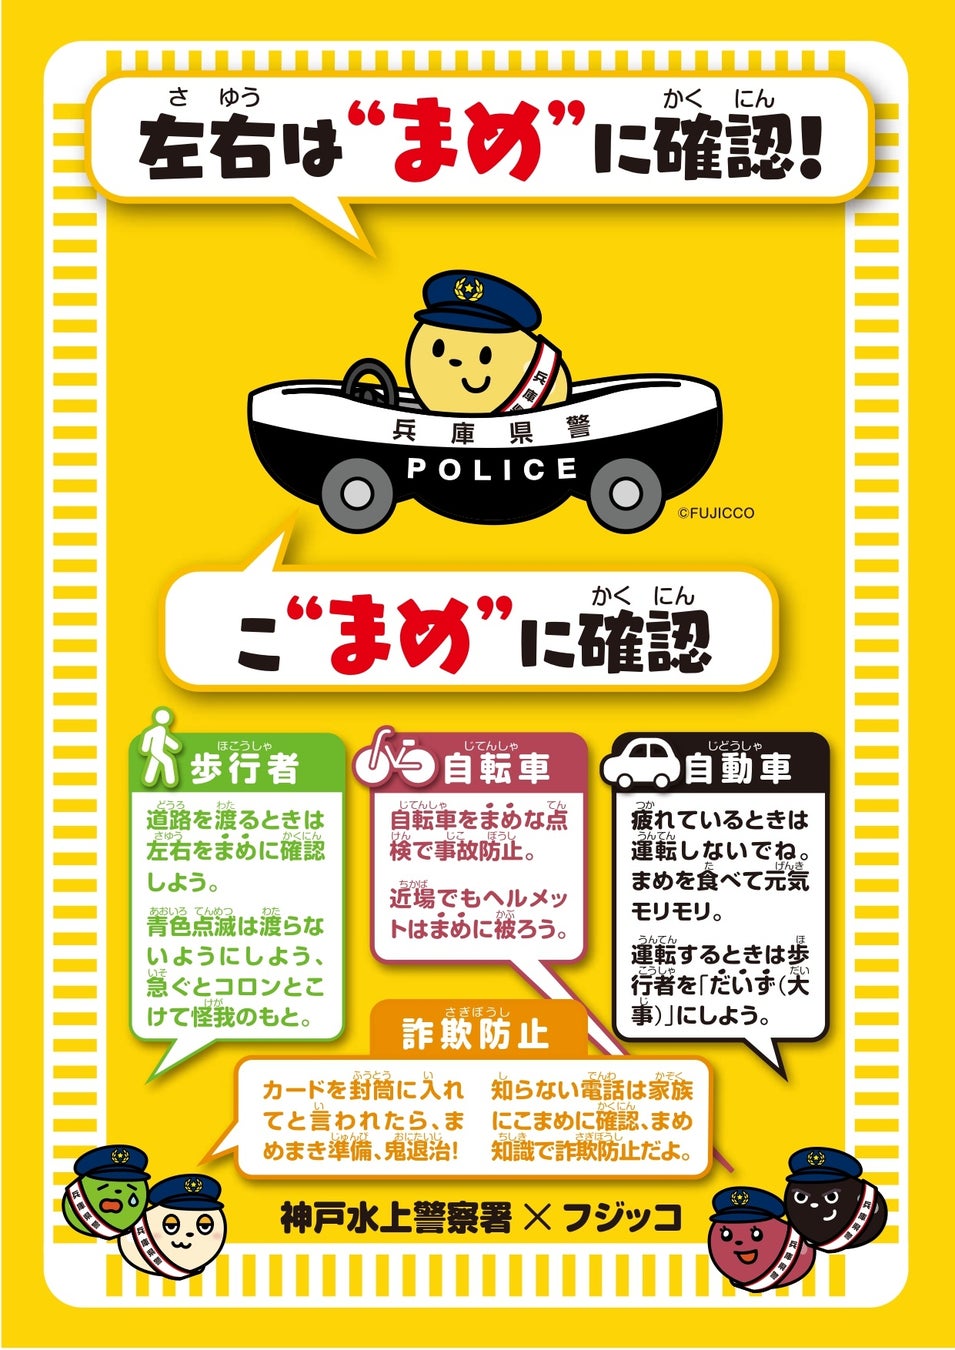 ｢一平ちゃんPayキャンペーン｣ 10月2日(月)からスタート